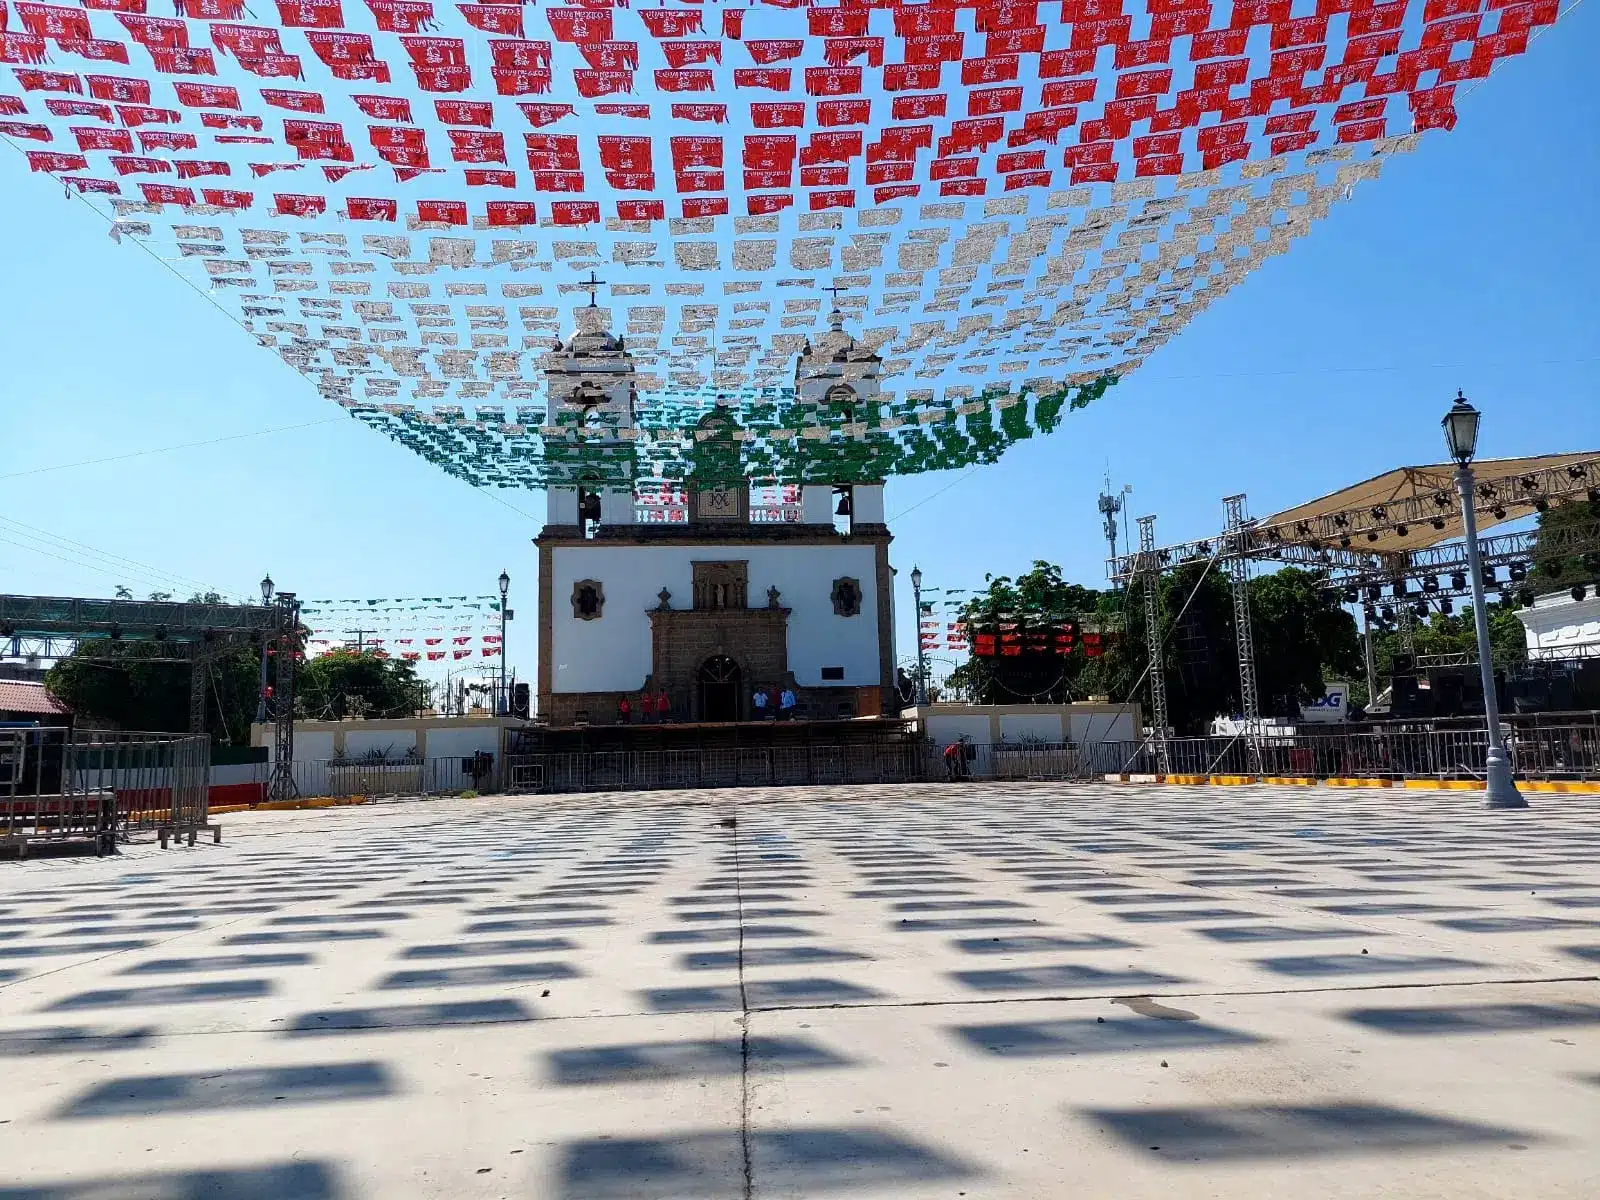 Lugar adornado de los colores de la bandera de México